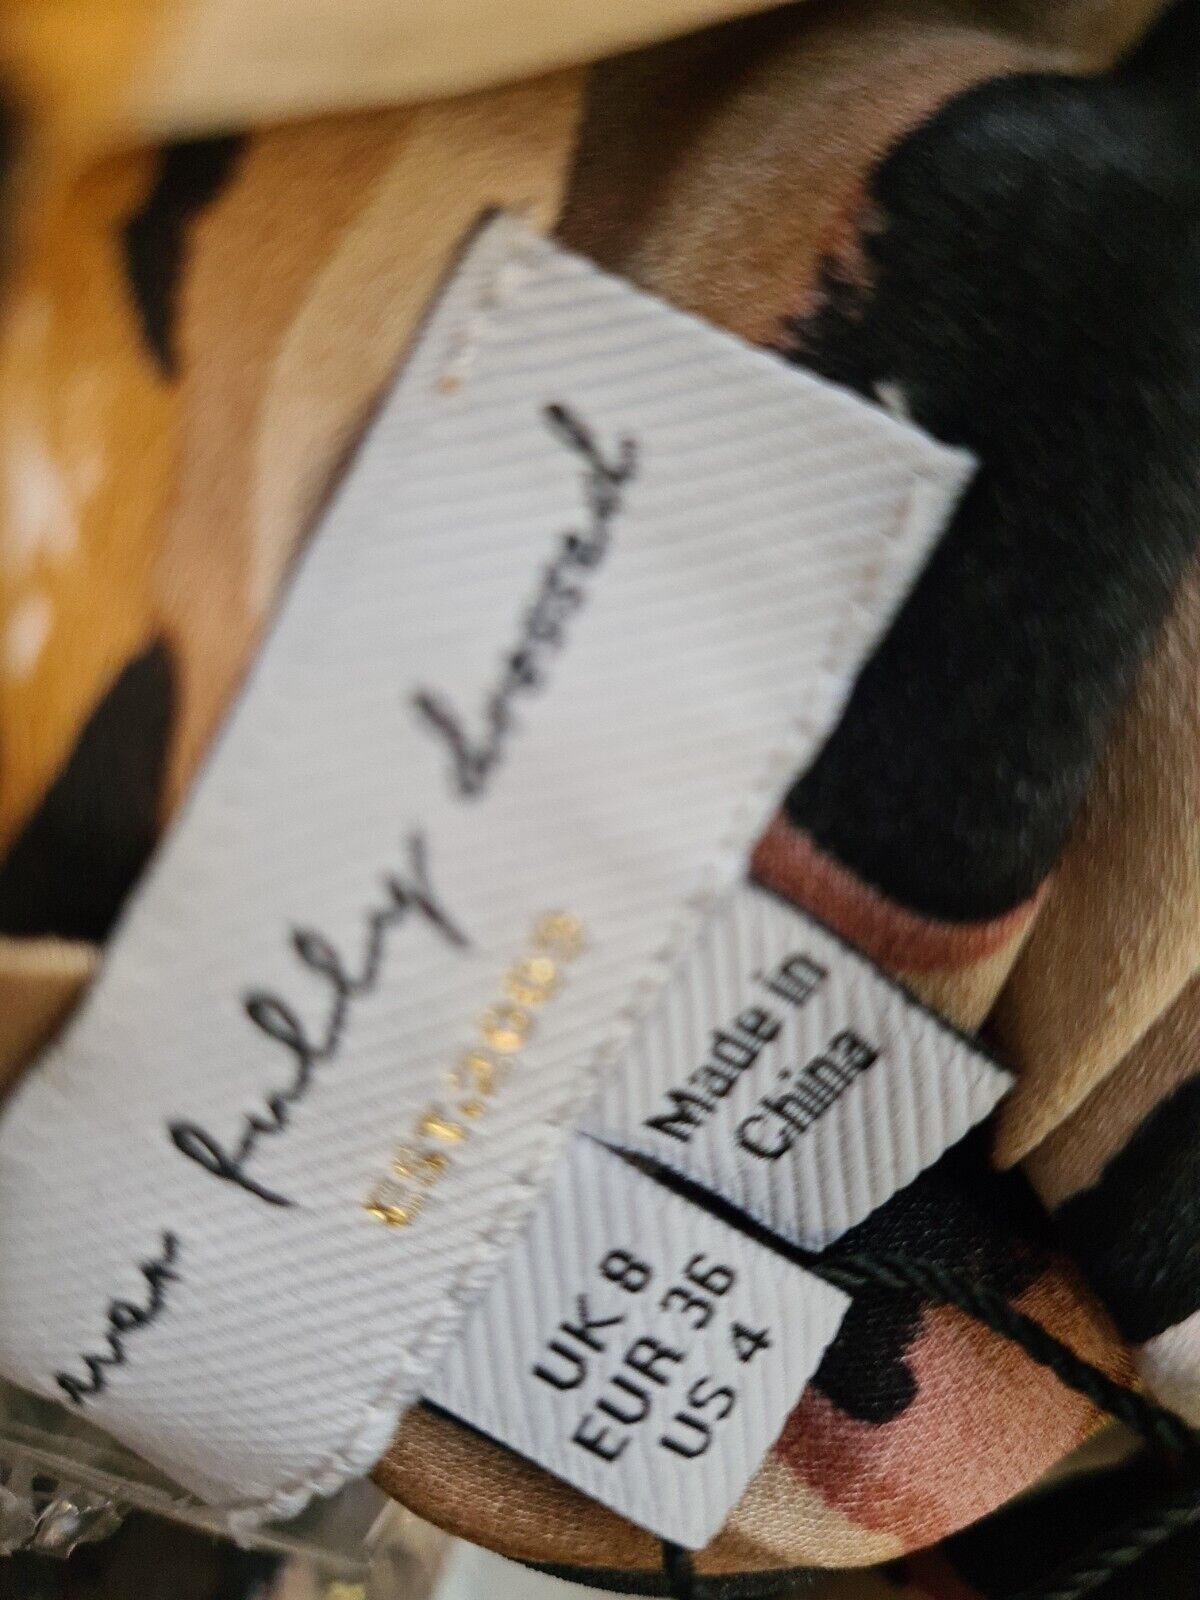 Never Fully Dressed Brown Leopard Wrap Dress. UK 8 **** Ref V310